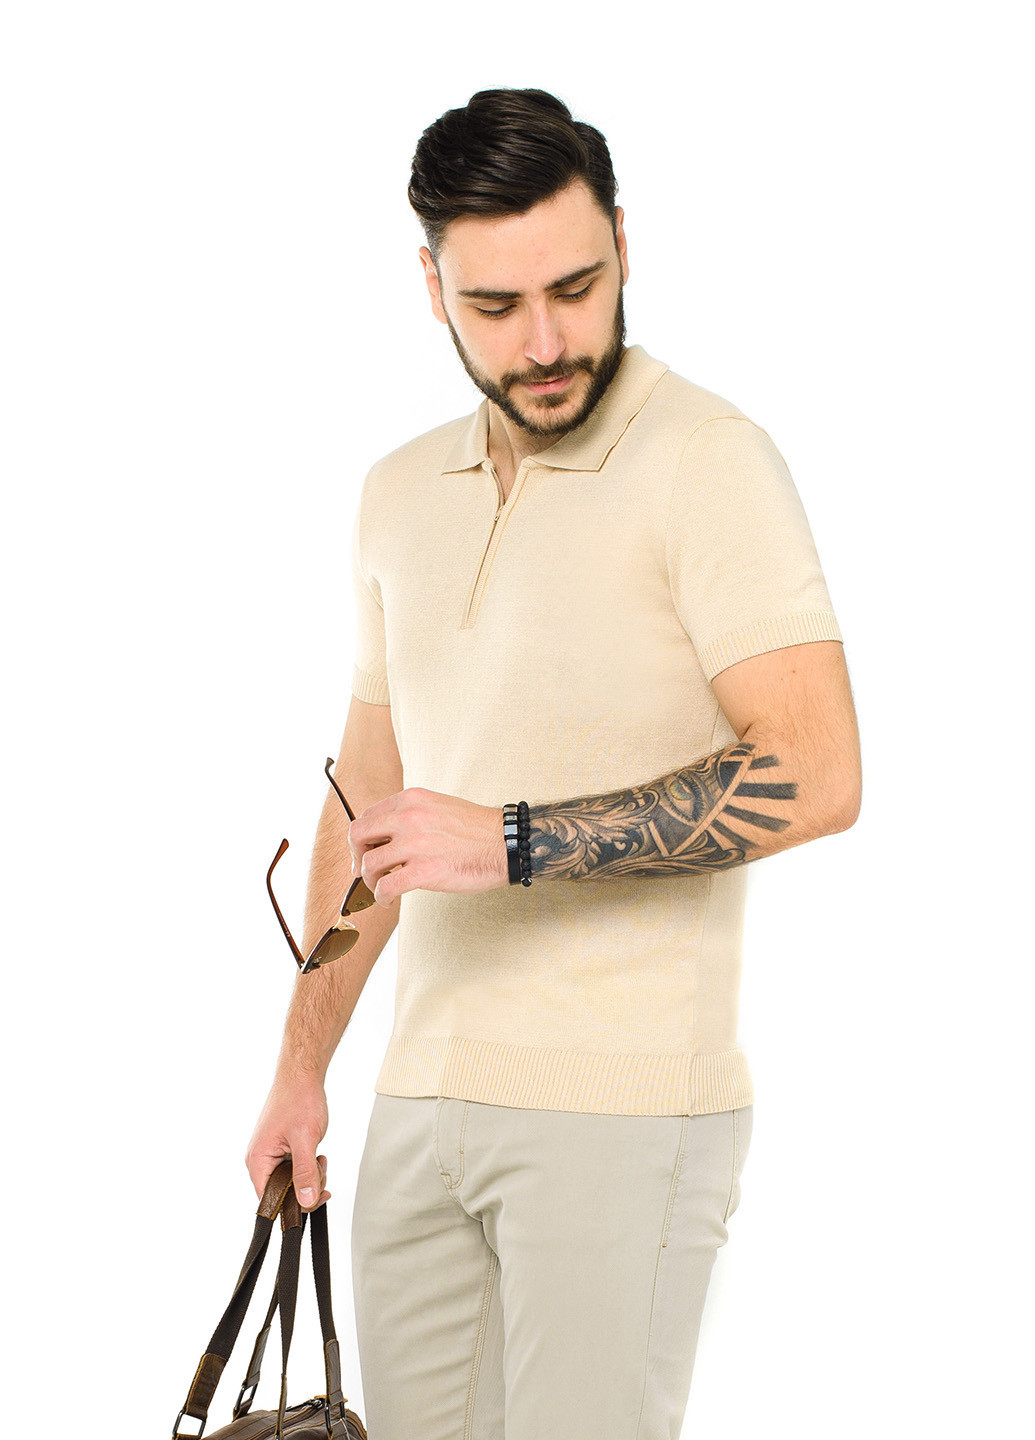 Бежевая футболка-джемпер-поло з коротким рукавом для мужчин SVTR